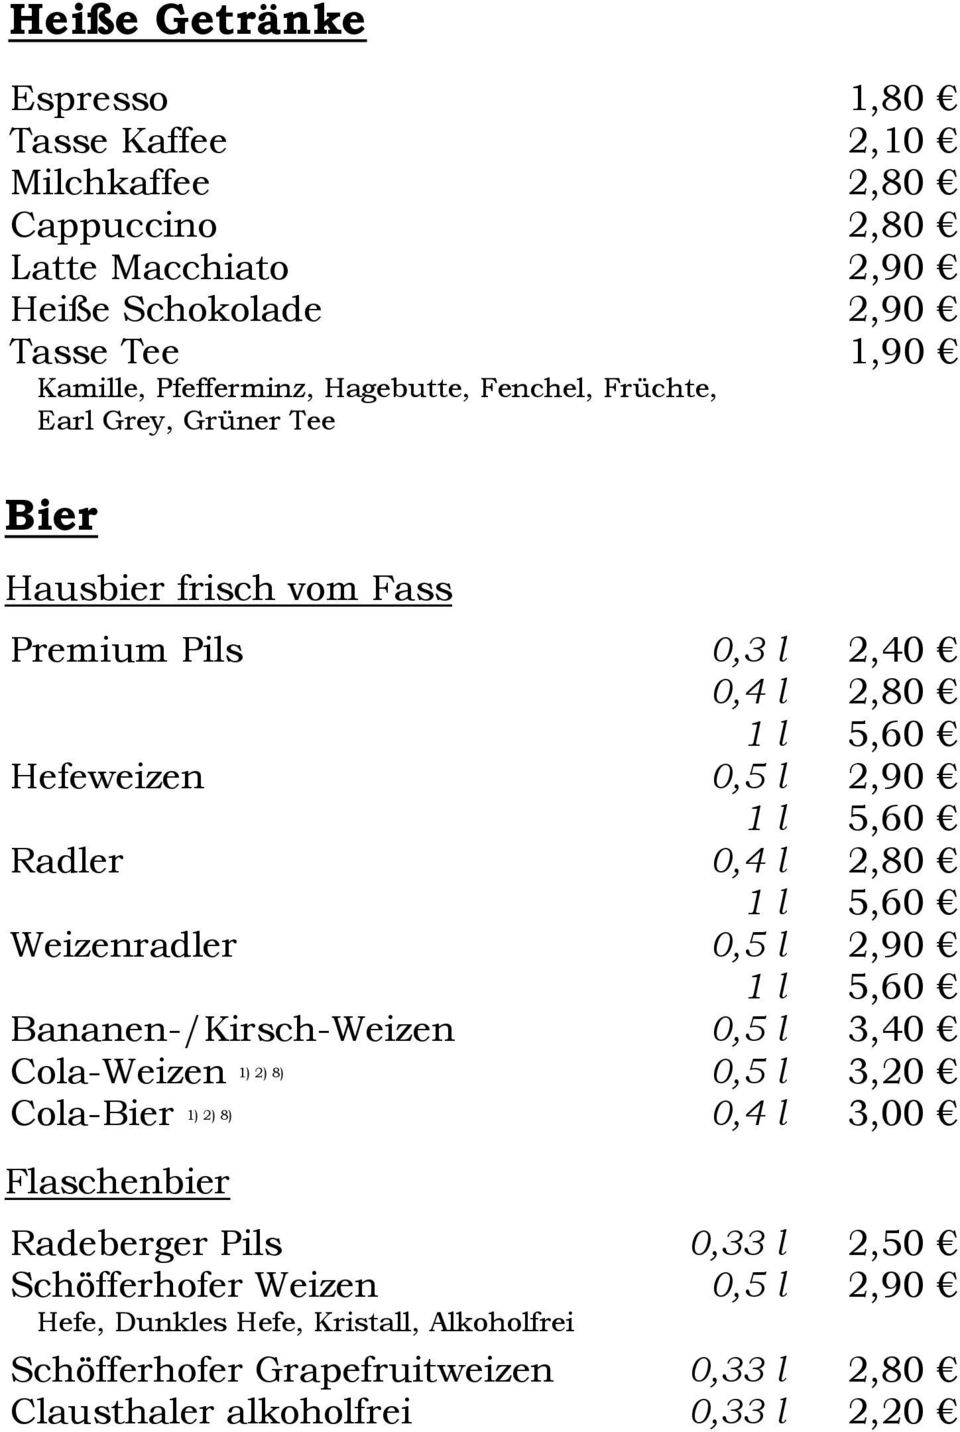 1 l 5,60 Weizenradler 0,5 l 1 l 5,60 Bananen-/Kirsch-Weizen 0,5 l 3,40 Cola-Weizen 1) 2) 8) 0,5 l 3,20 Cola-Bier 1) 2) 8) 0,4 l 3,00 Flaschenbier Radeberger